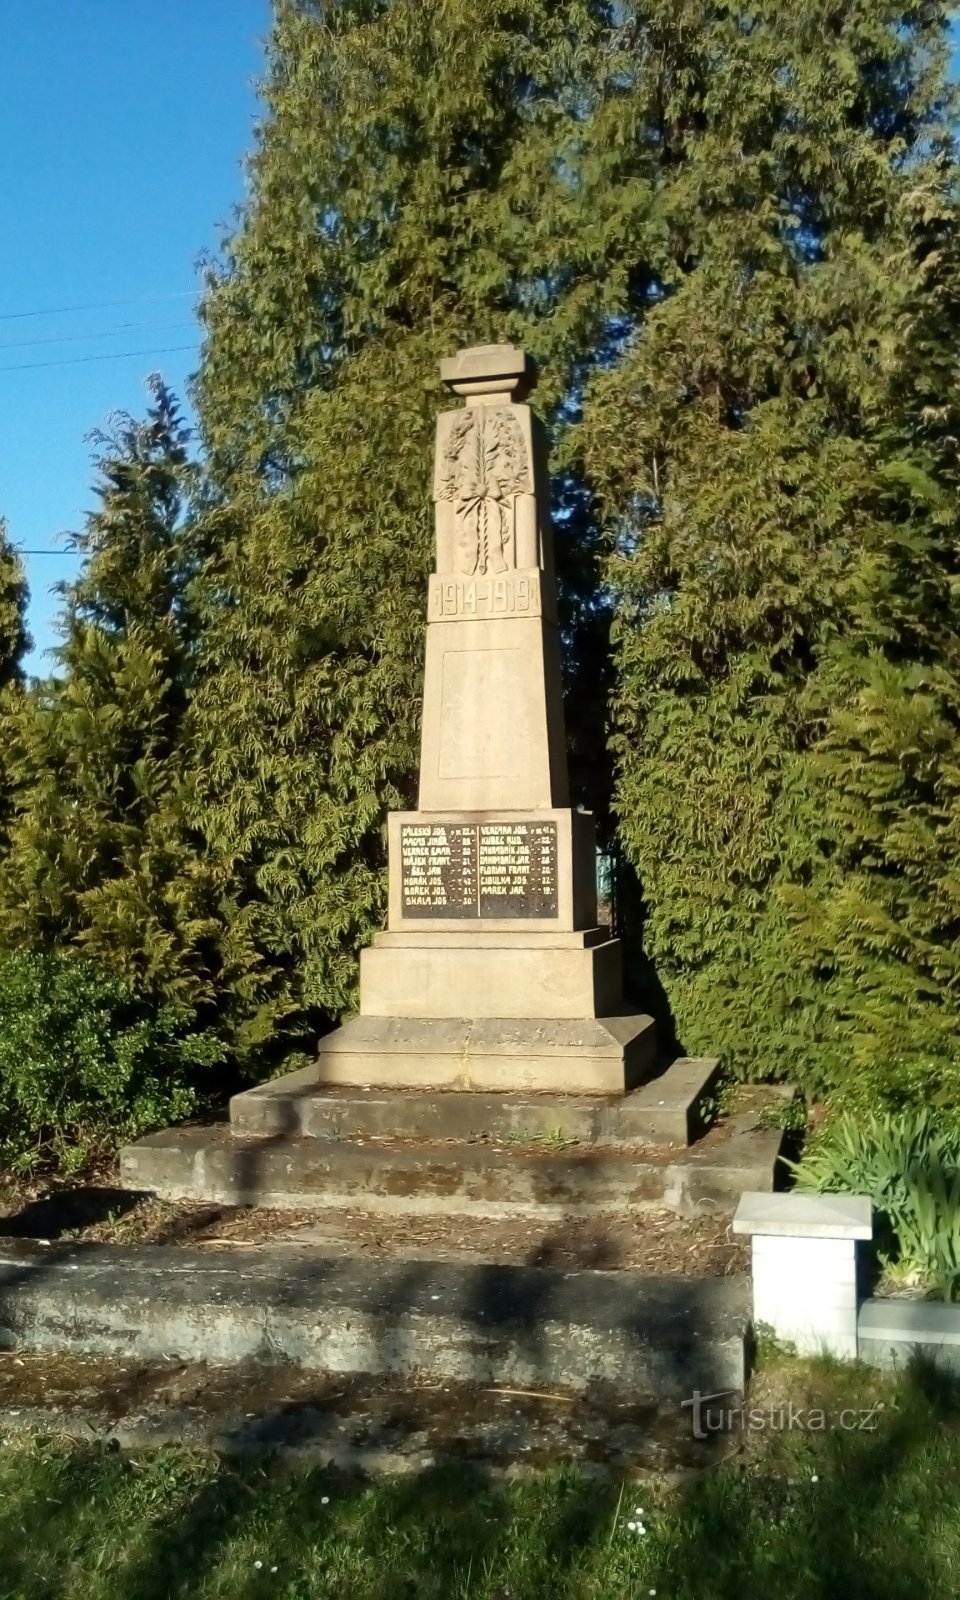 Đài tưởng niệm các nạn nhân của Thế chiến thứ nhất ở Trnová